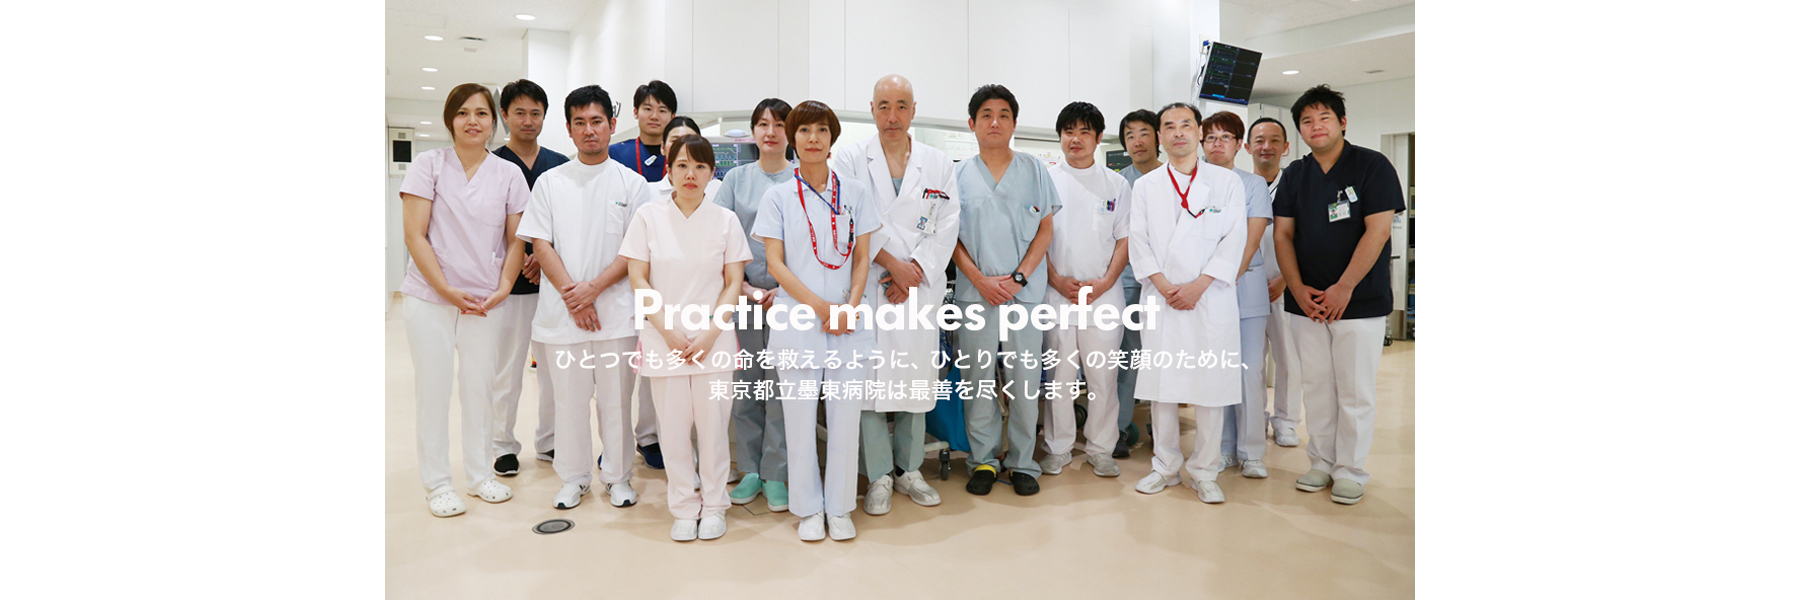 365日24時間の安心　ひとつでも多くの命を救えるように、ひとりでも多くの笑顔のために、東京都立墨東病院は最善を尽くします。